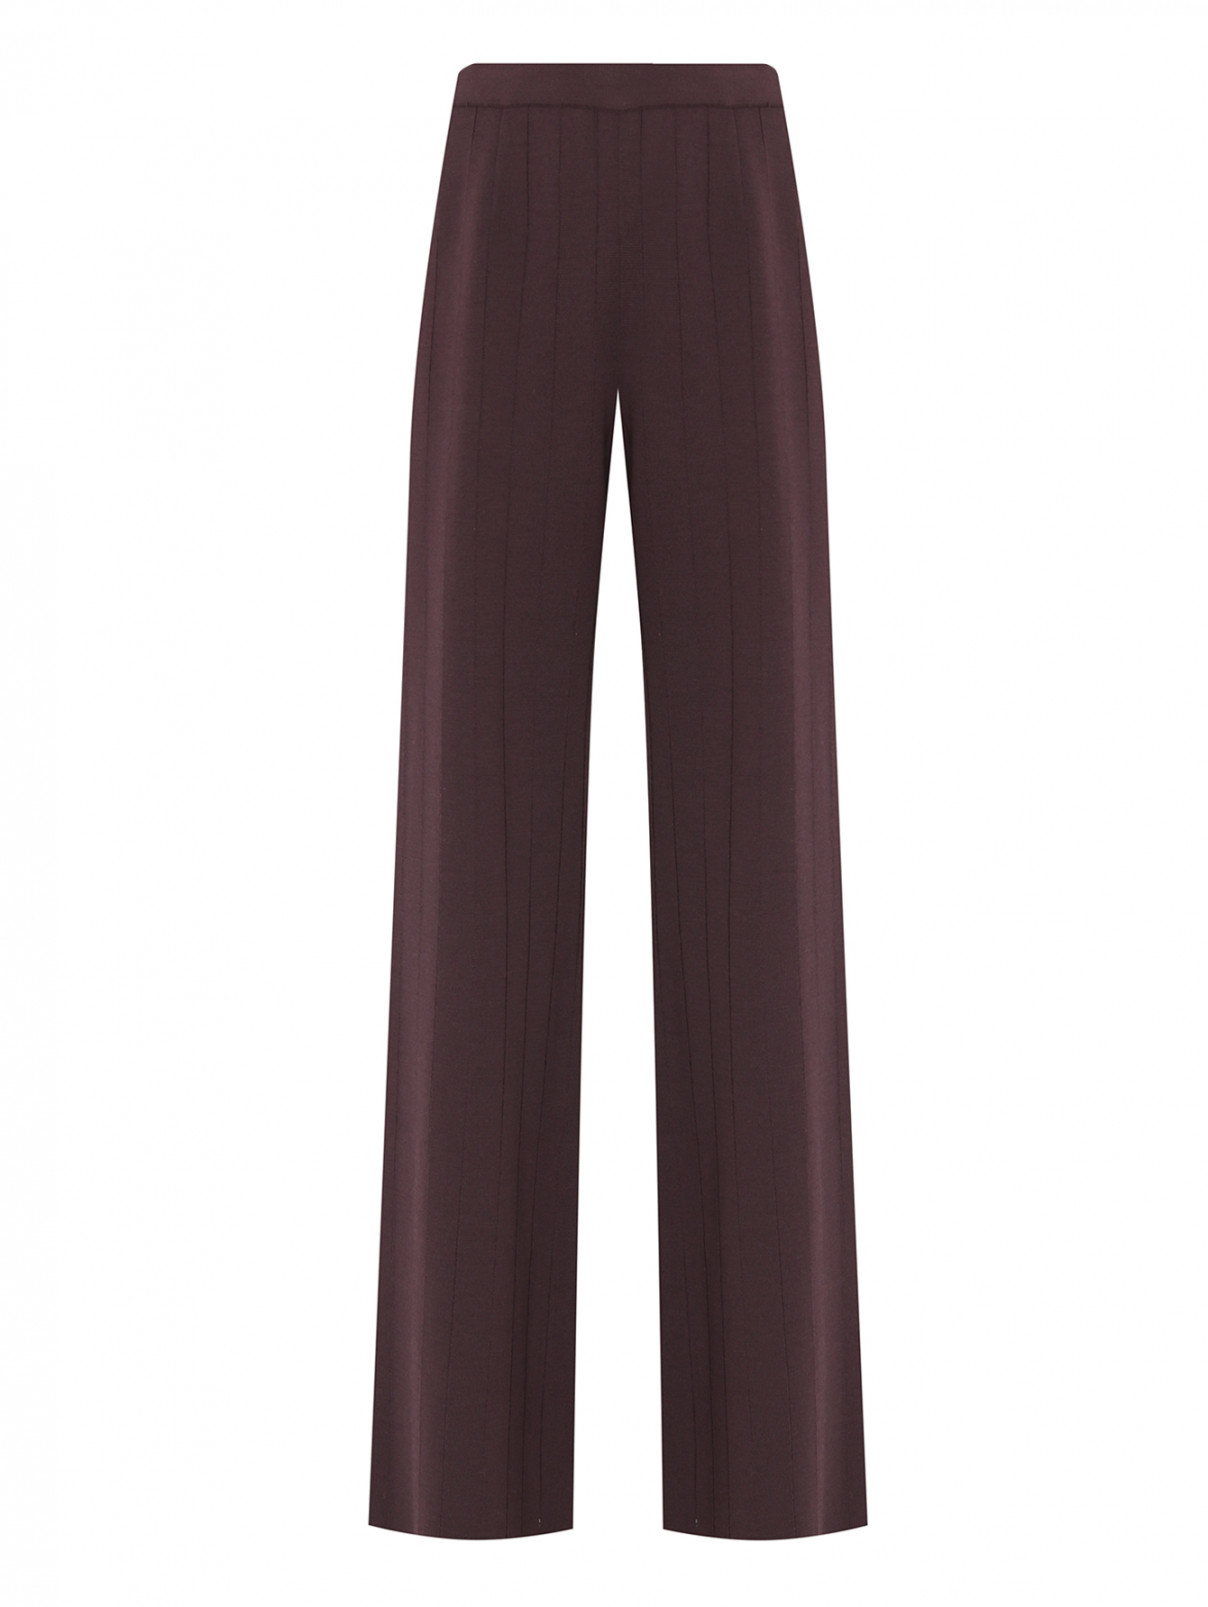 Трикотажные брюки на резинке MRZ  –  Общий вид  – Цвет:  Фиолетовый